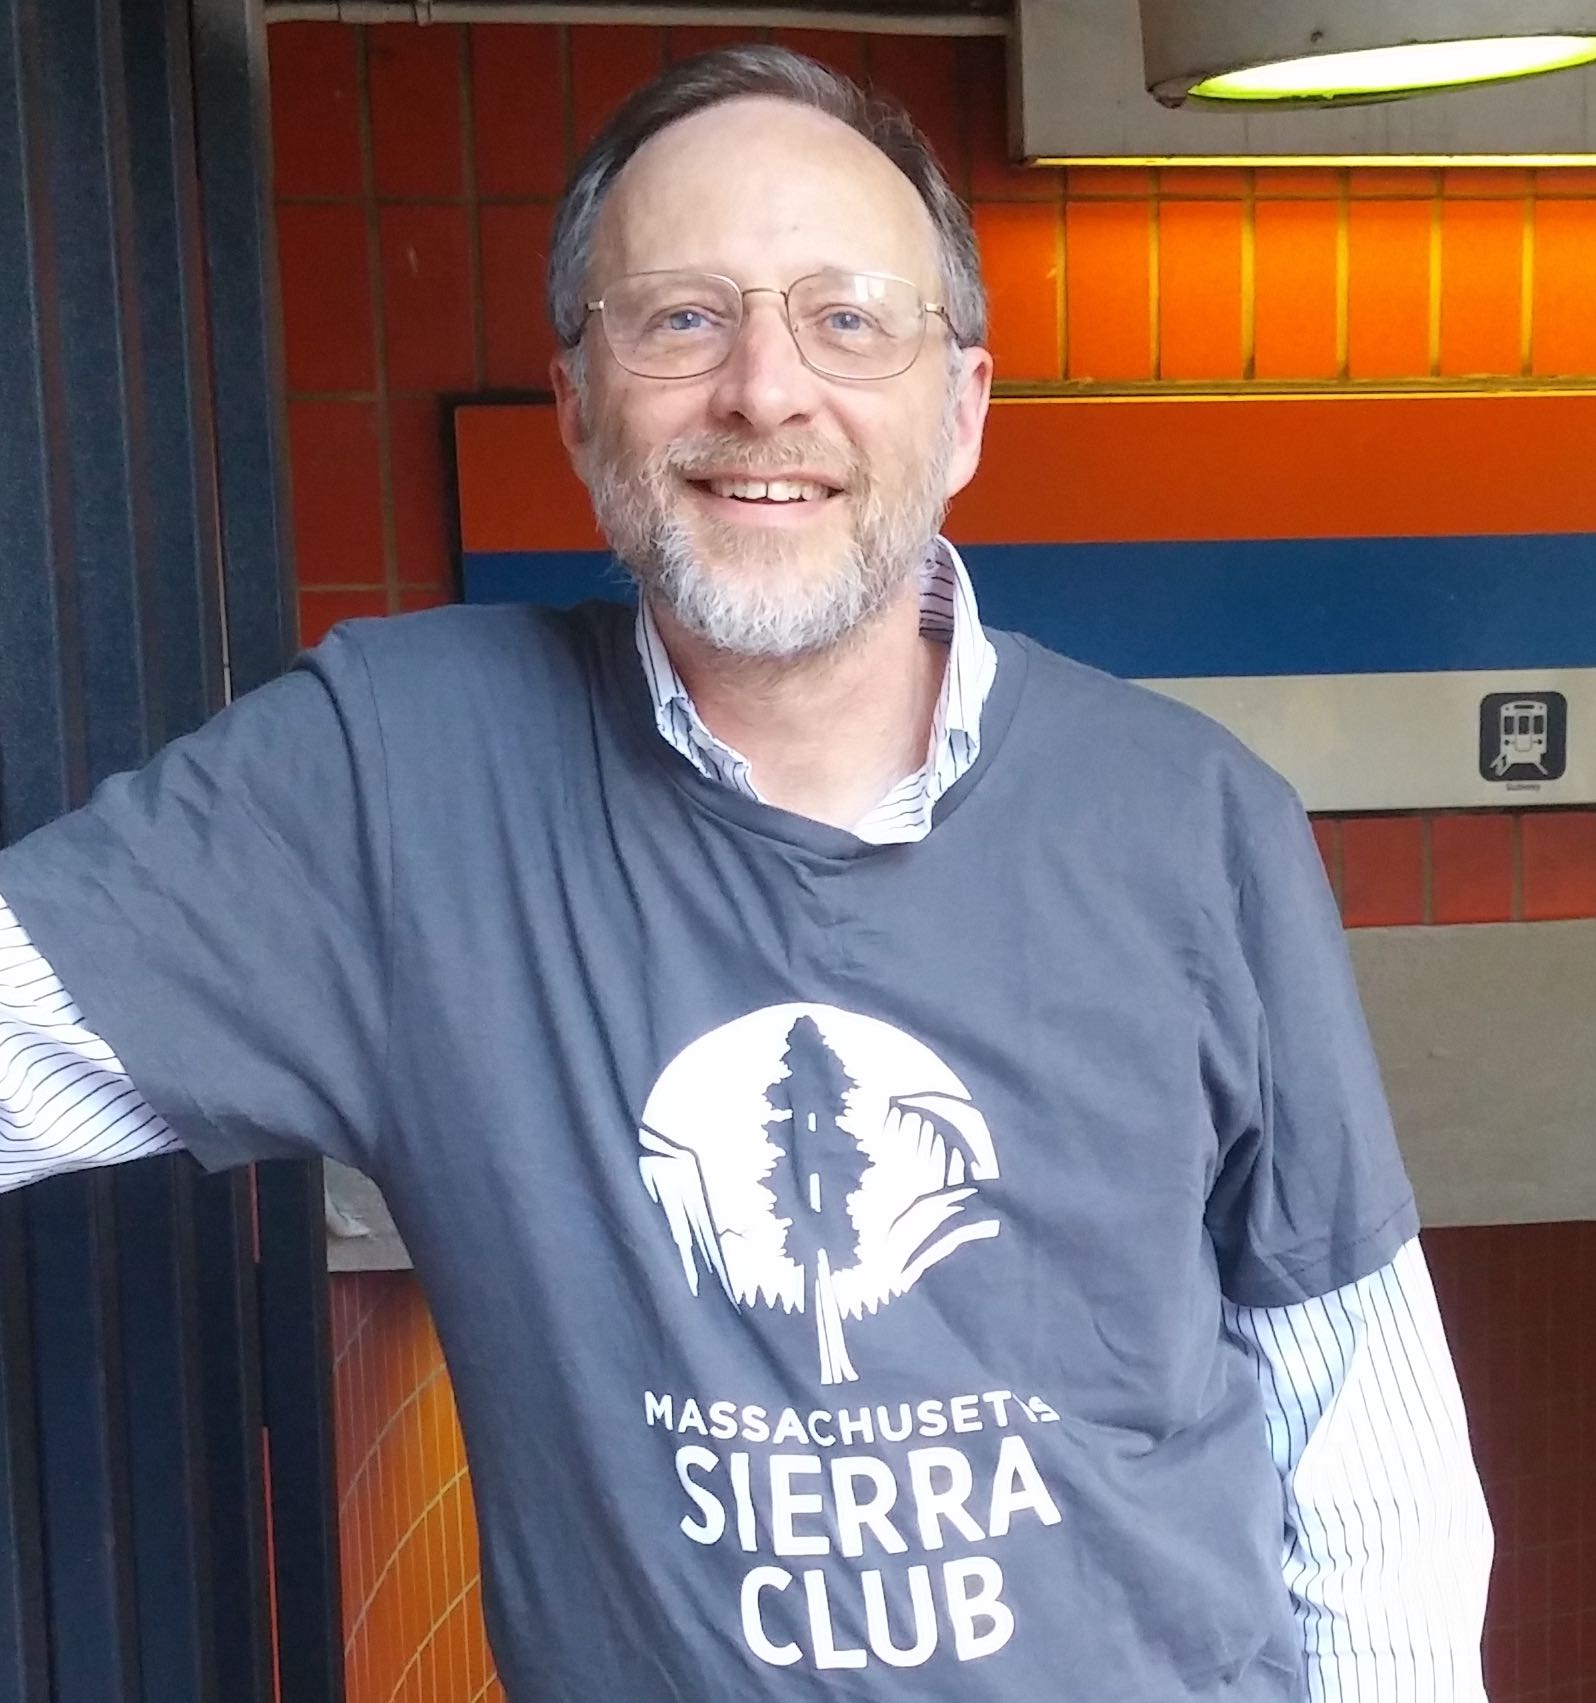 Image of Clint Richmond wearing a Massachusetts Sierra Club shirt